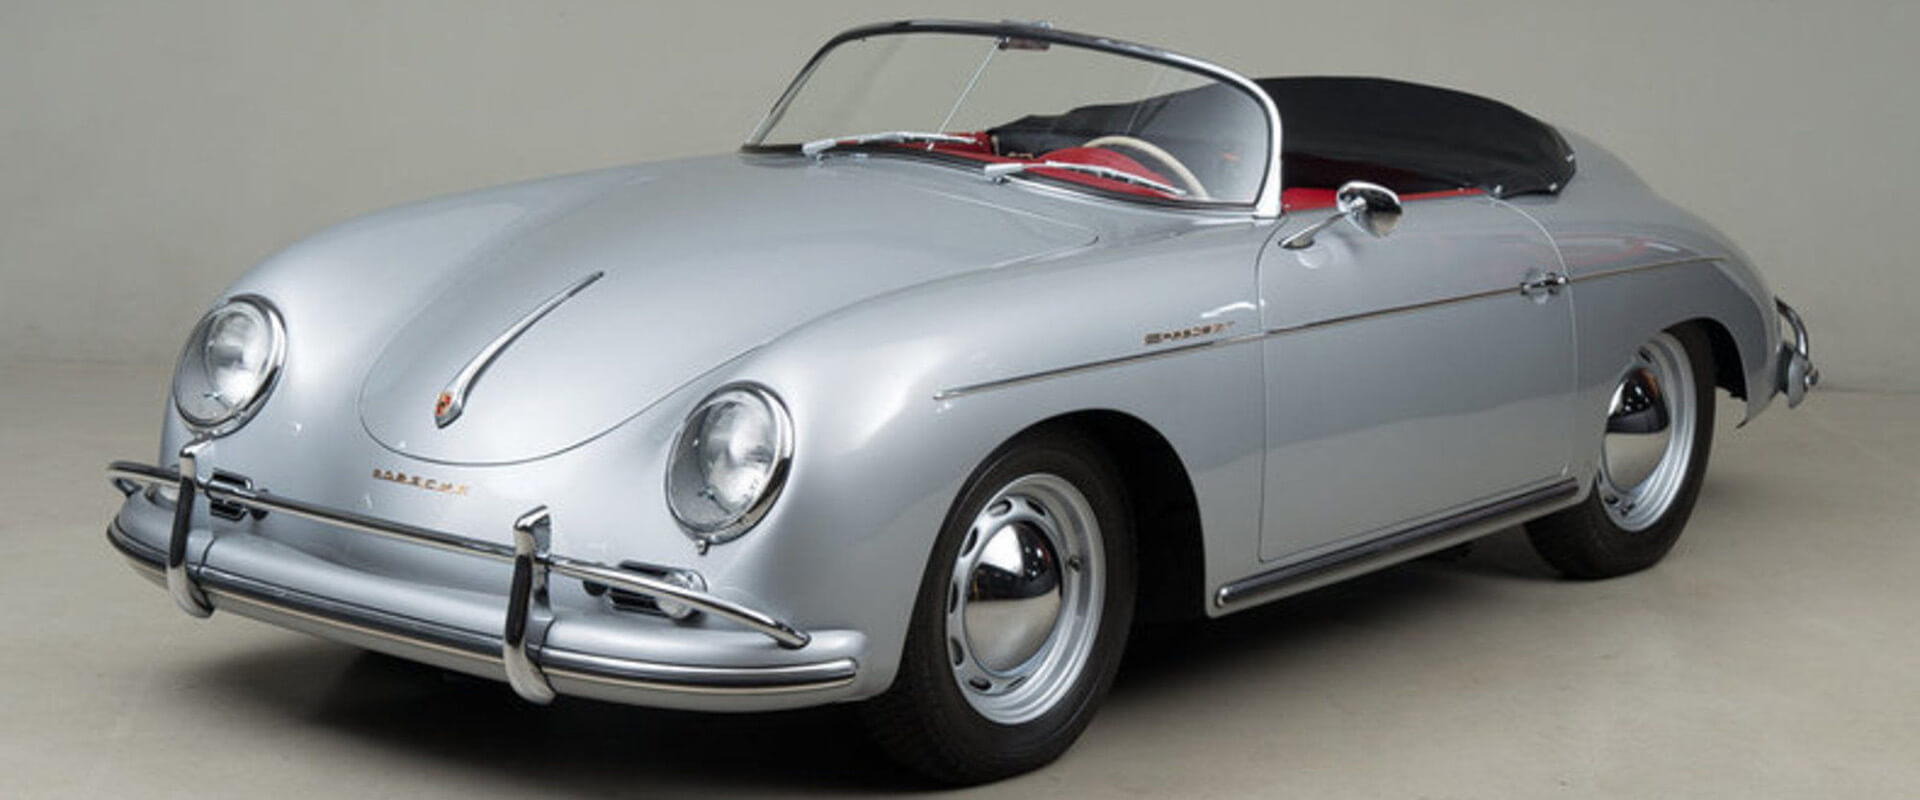 Um pouco de História – Porsche, o nascimento de uma lenda